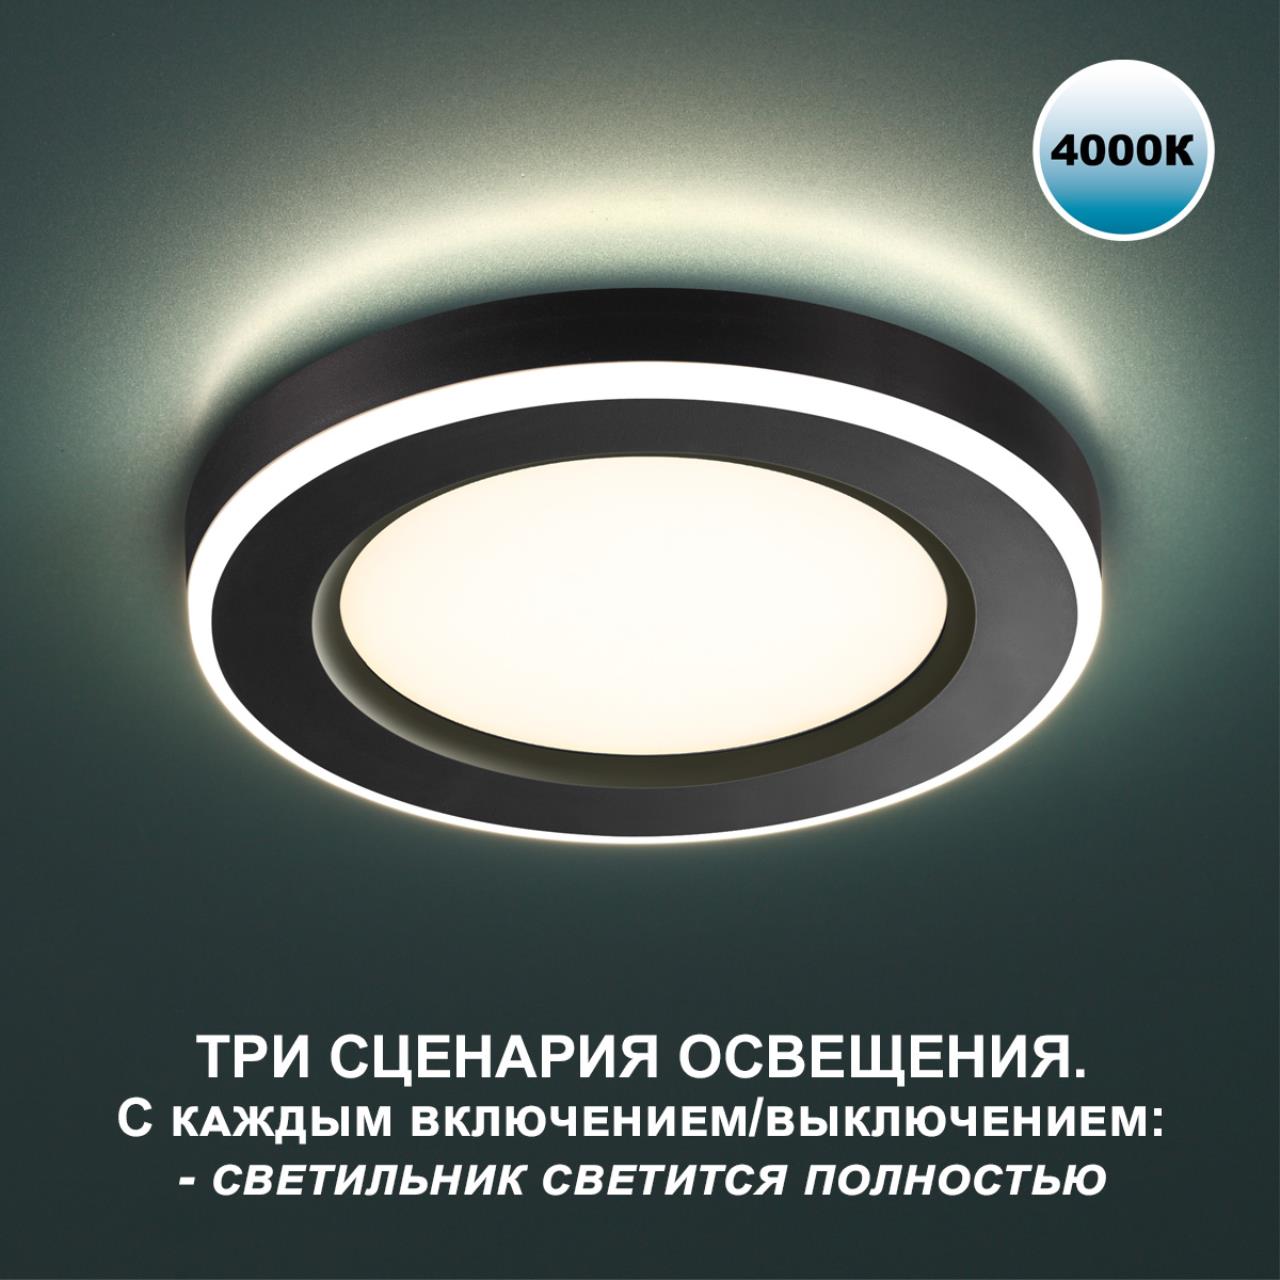 Трёхрежимный встраиваемый светодиодный светильник Novotech SPAN 359015